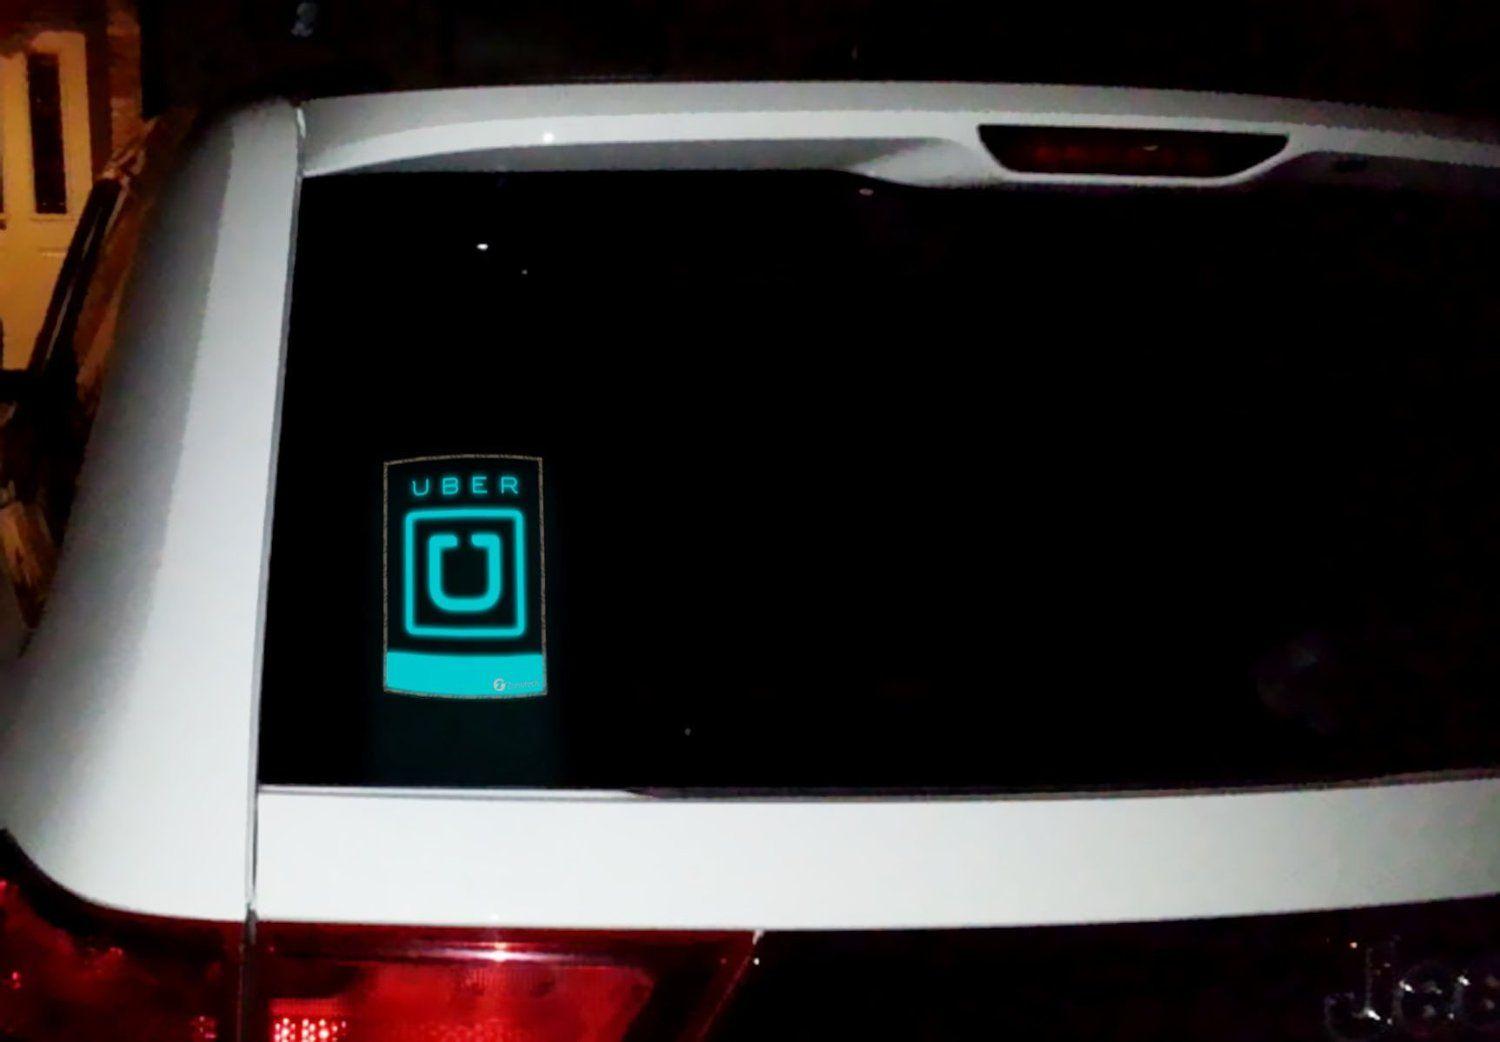 Illuminating Uber Logo - Zone Tech Blue UBER Sign – Illuminated Blue Light Car Logo with ...